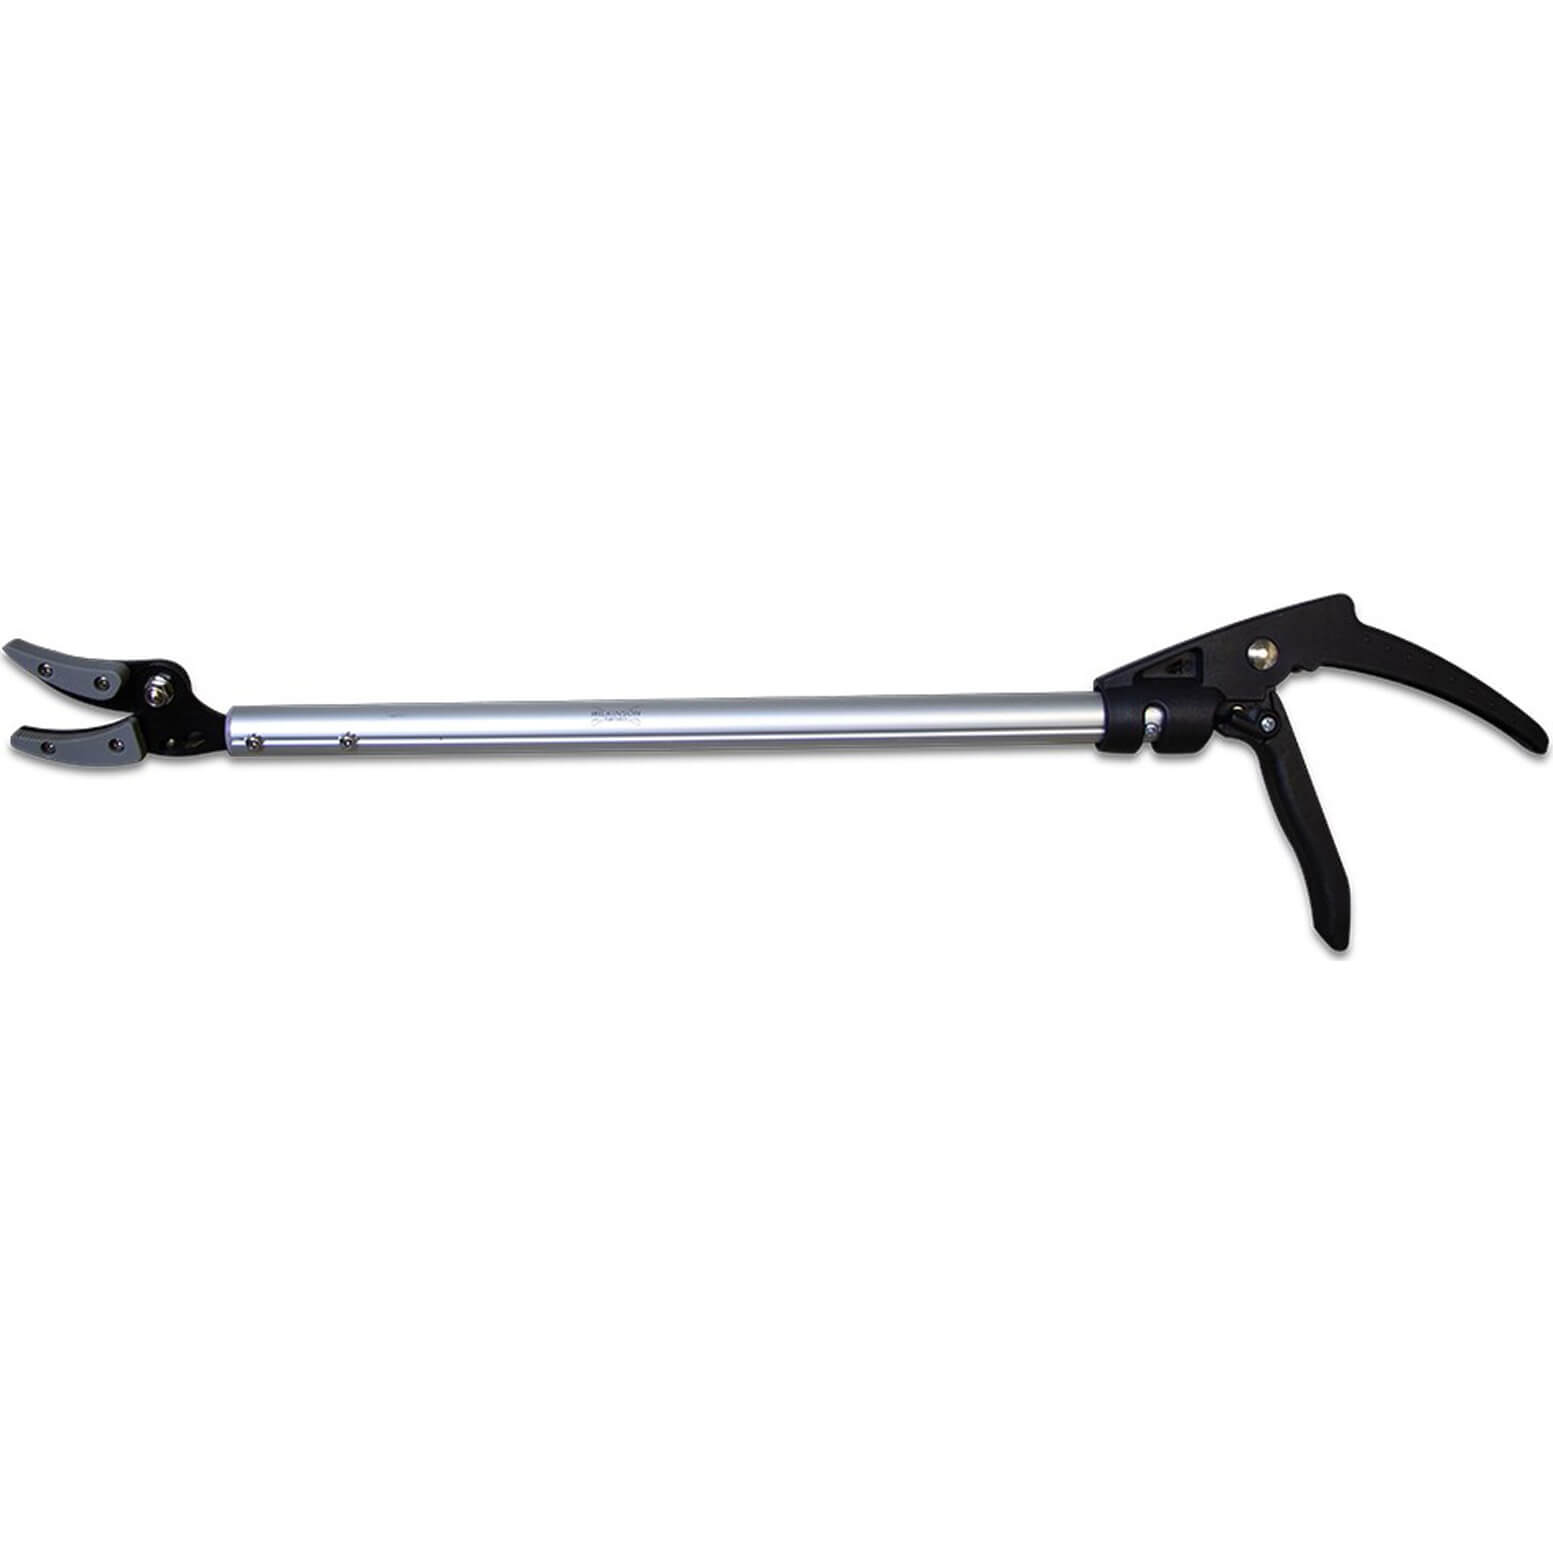 Wilkinson Sword Ultralight Long Reach Pruner 650mm